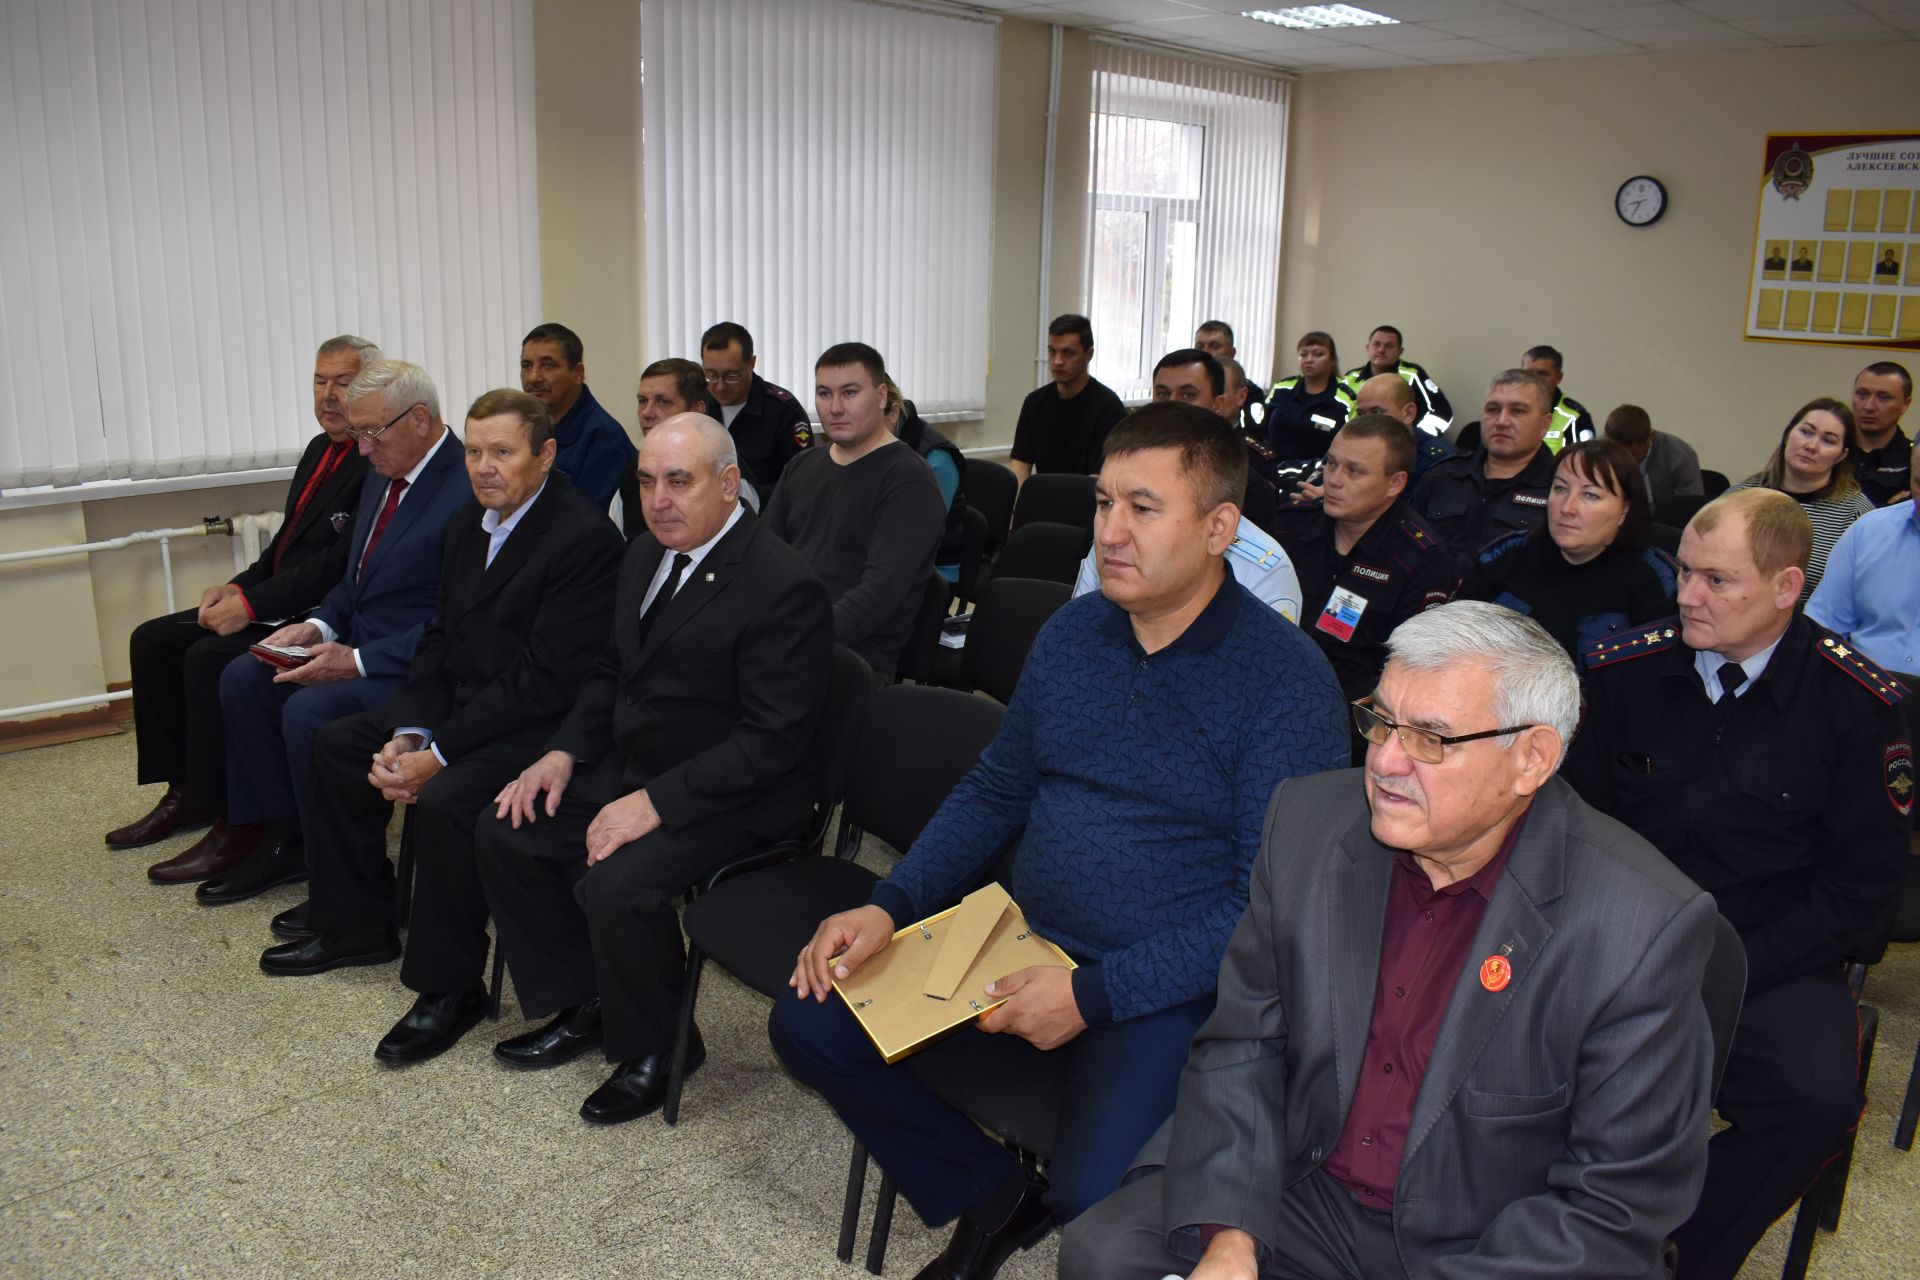 Председателя Совета ветеранов МВД Алексеевского района поздравили с юбилеем